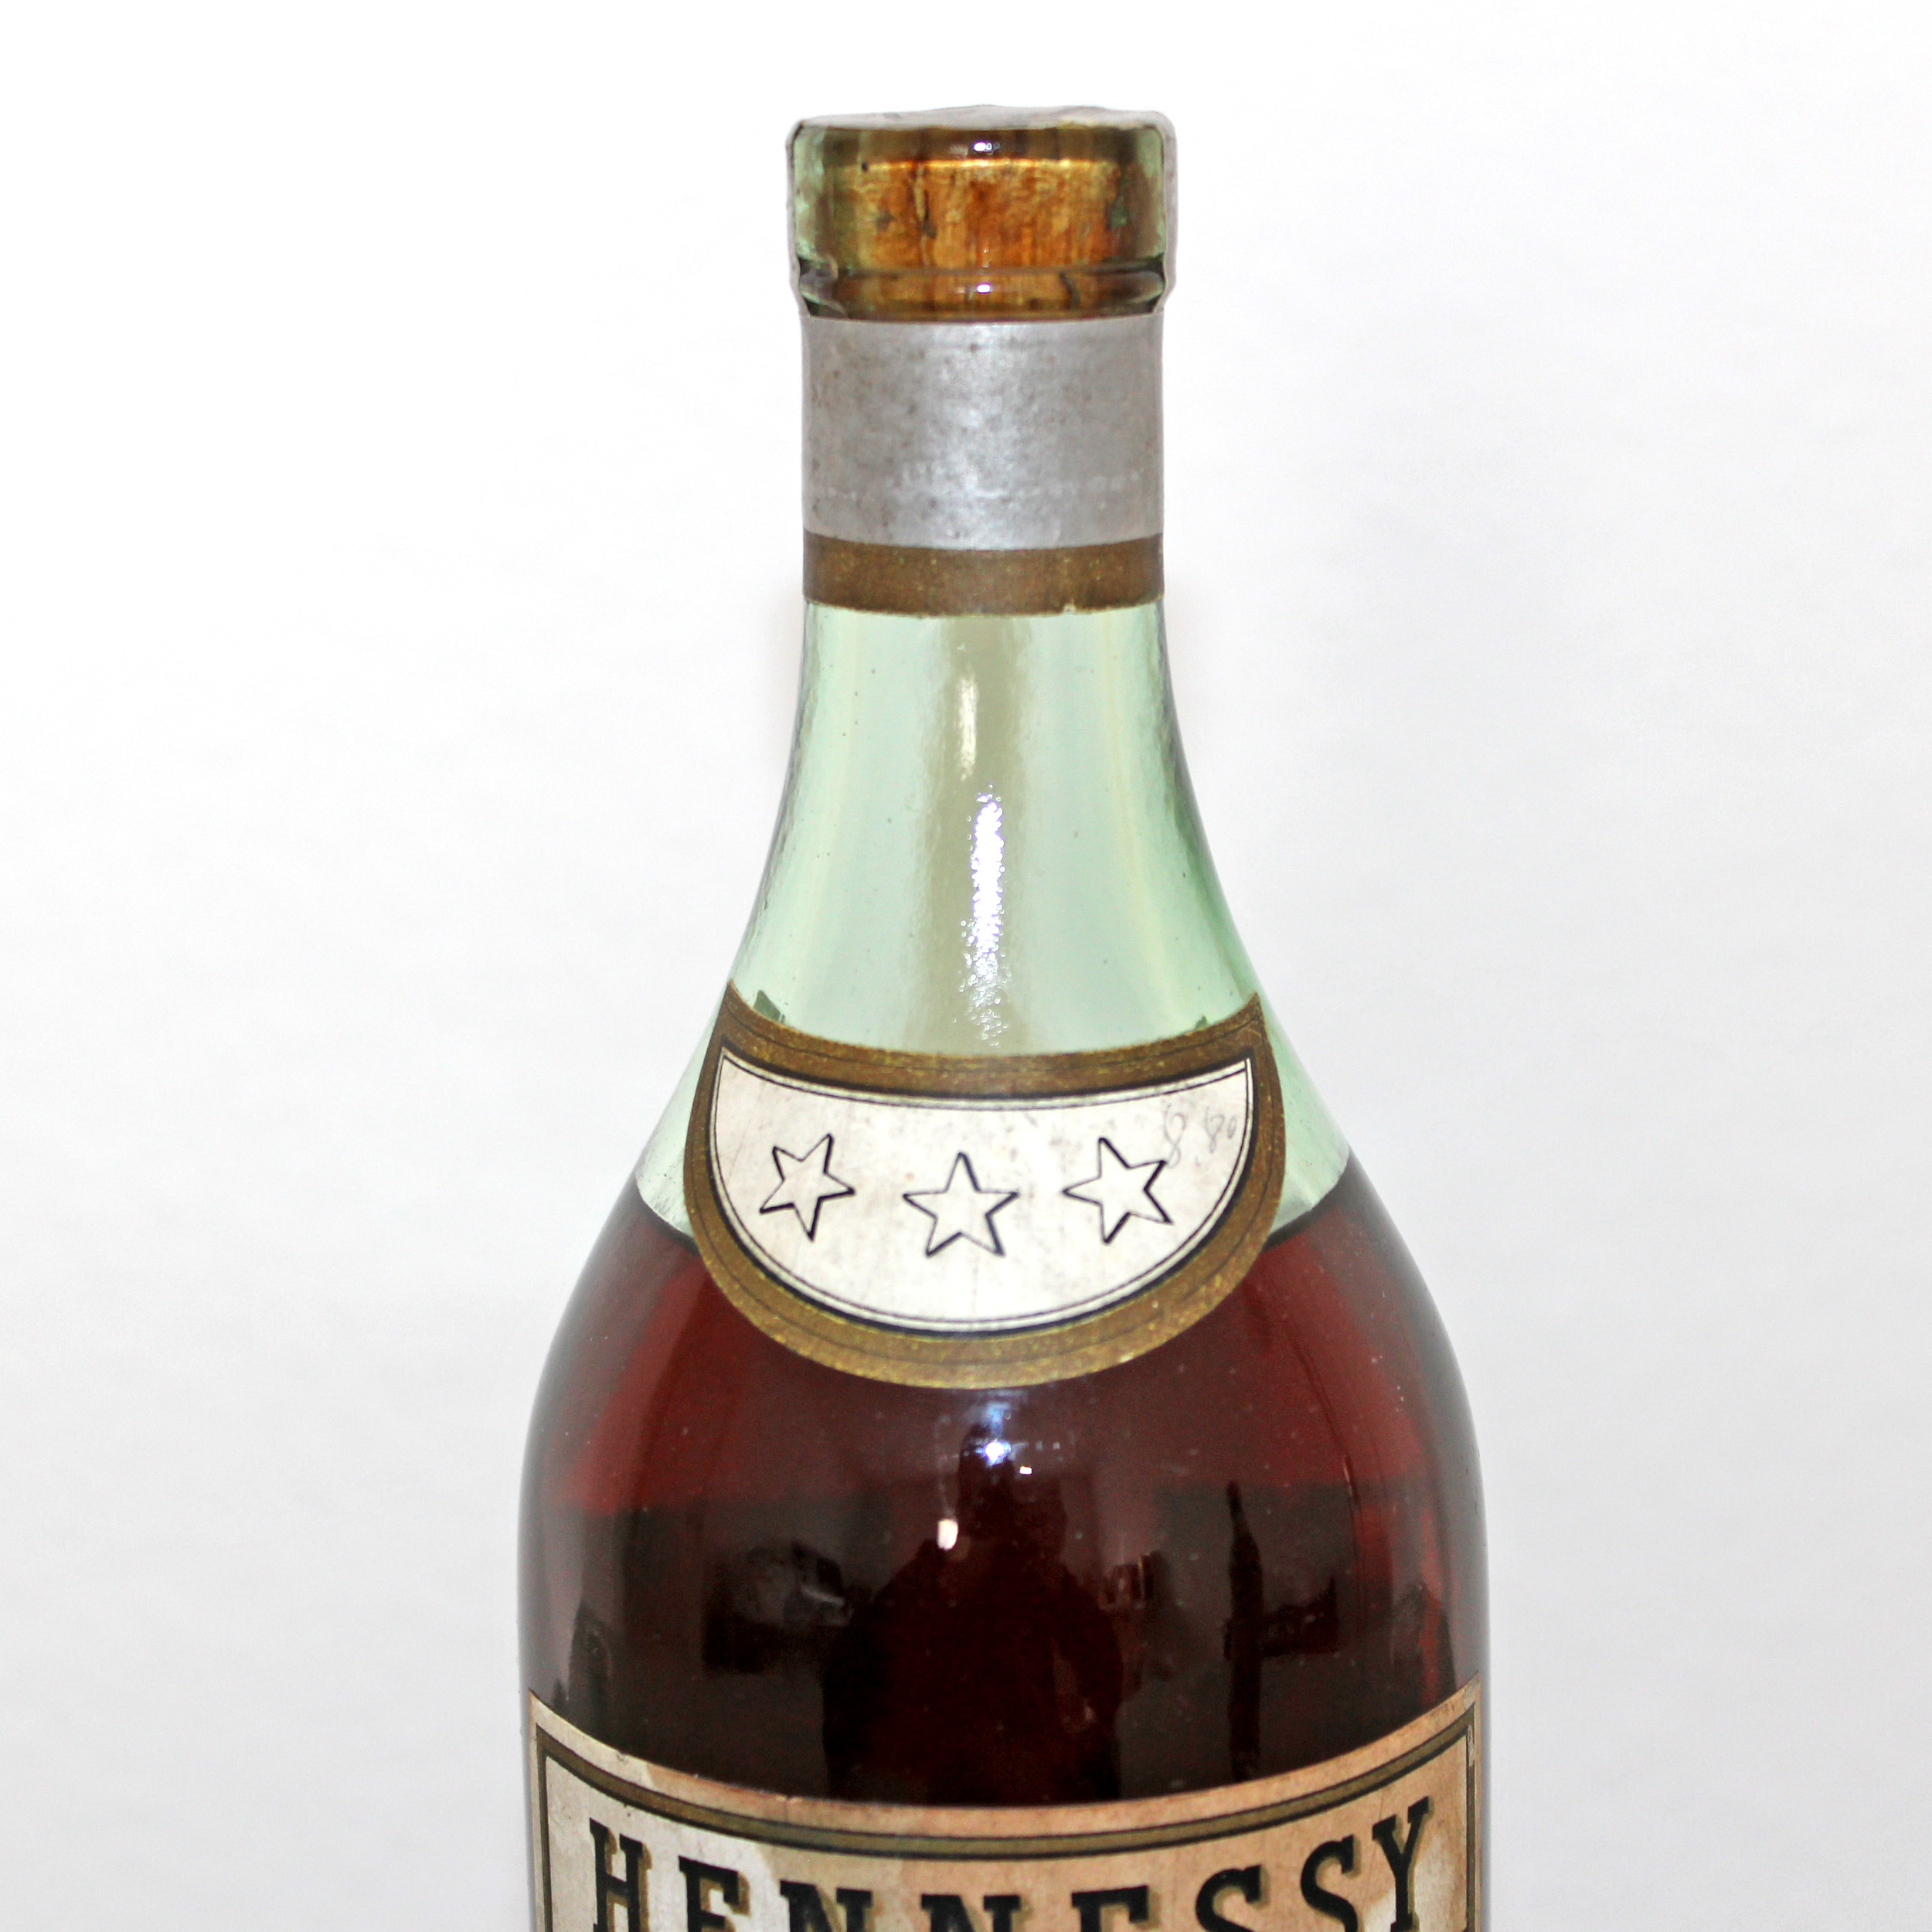 Hennessy 3 Star Cognac 1941 Wehrmacht level